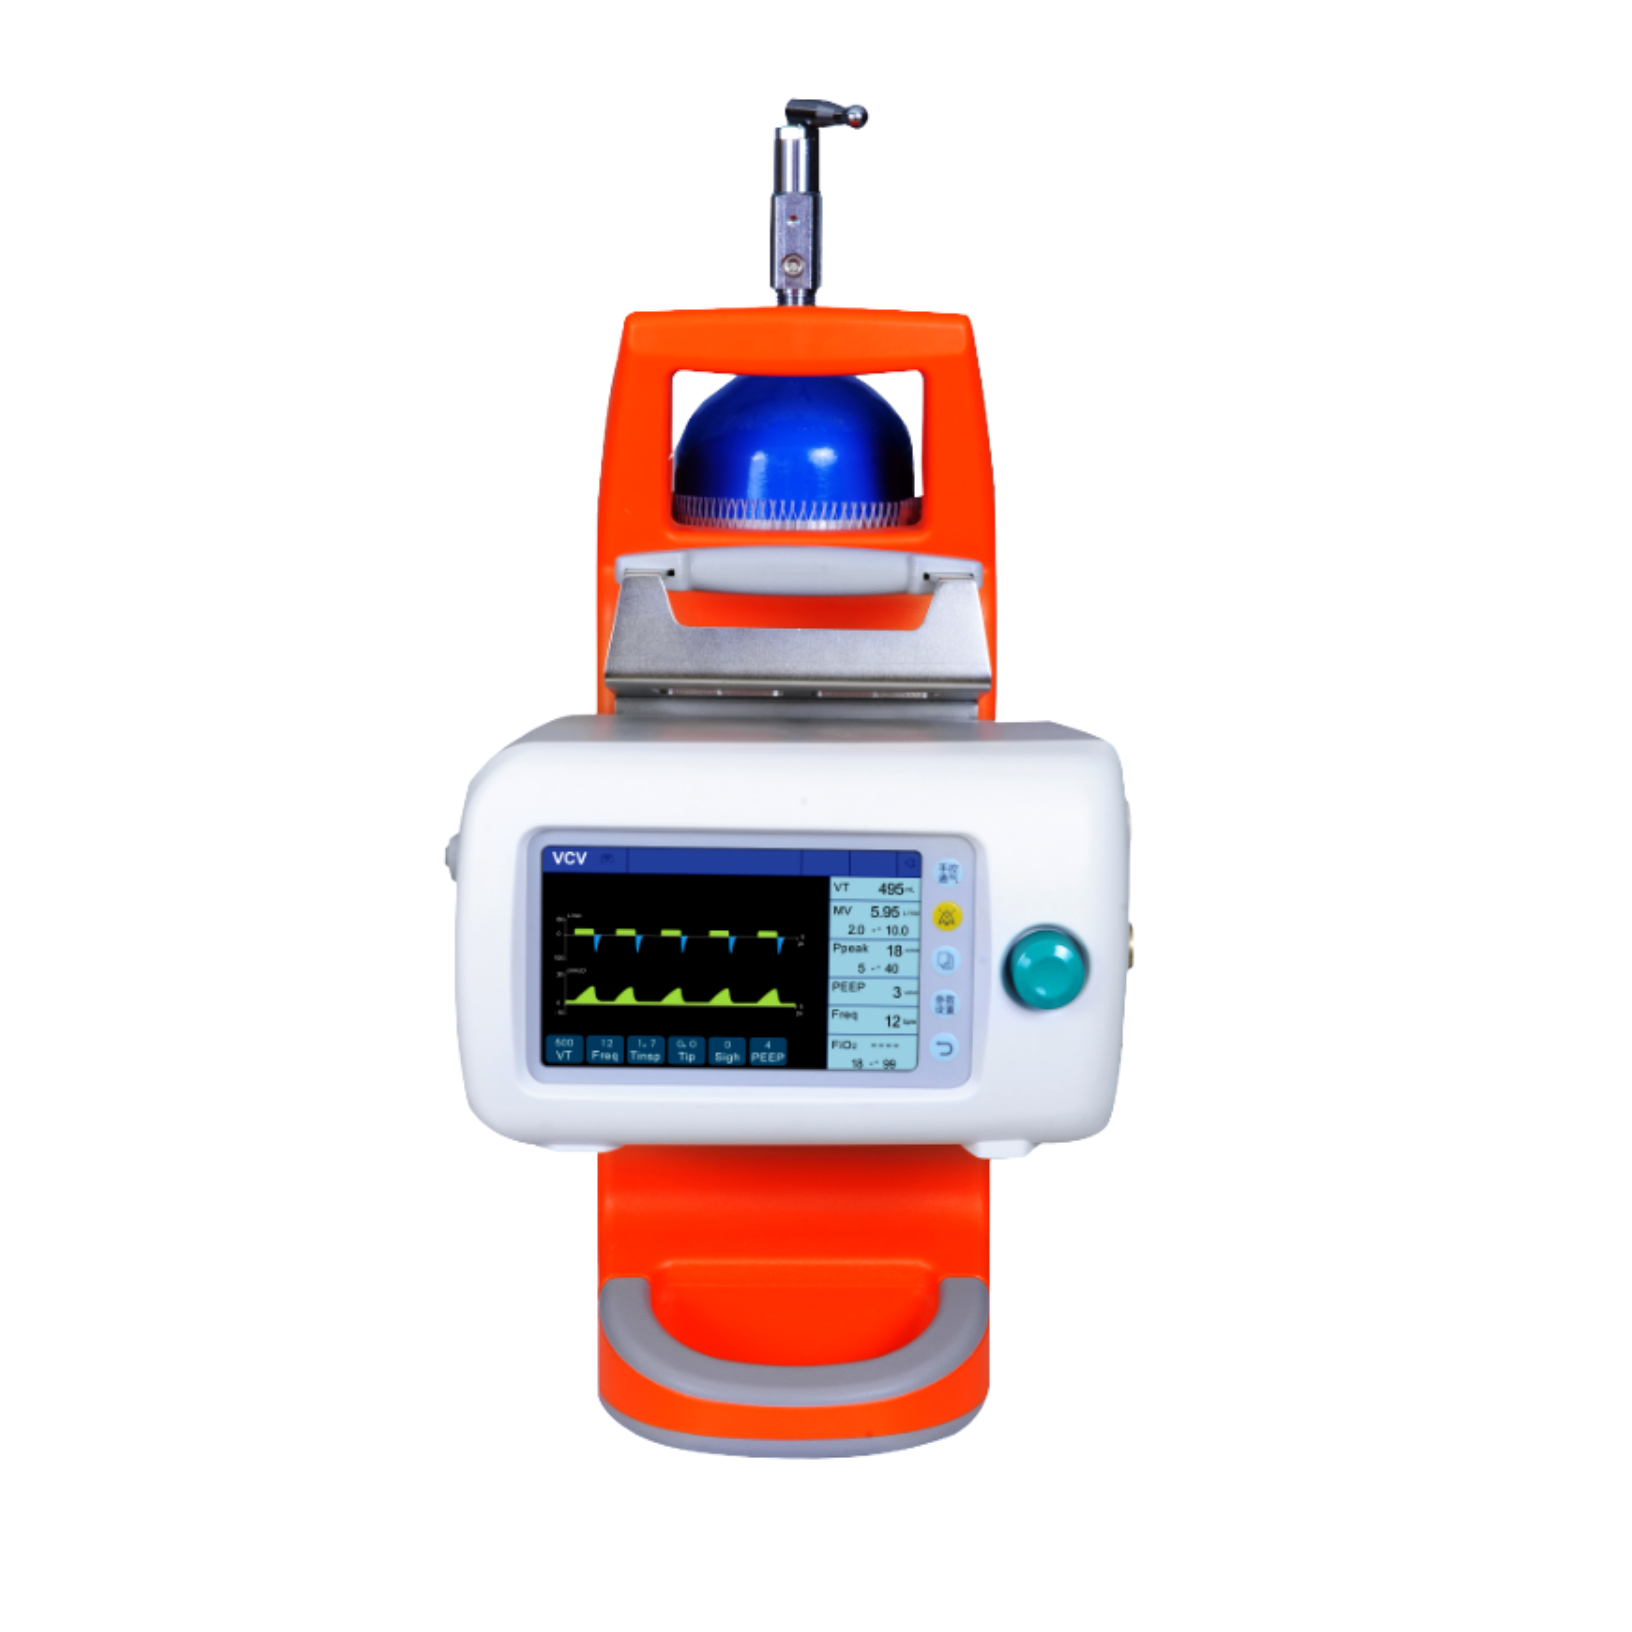 Tragbares Krankenhaus-Beatmungsgerät mit eingebauter Batterie und Bildschirm